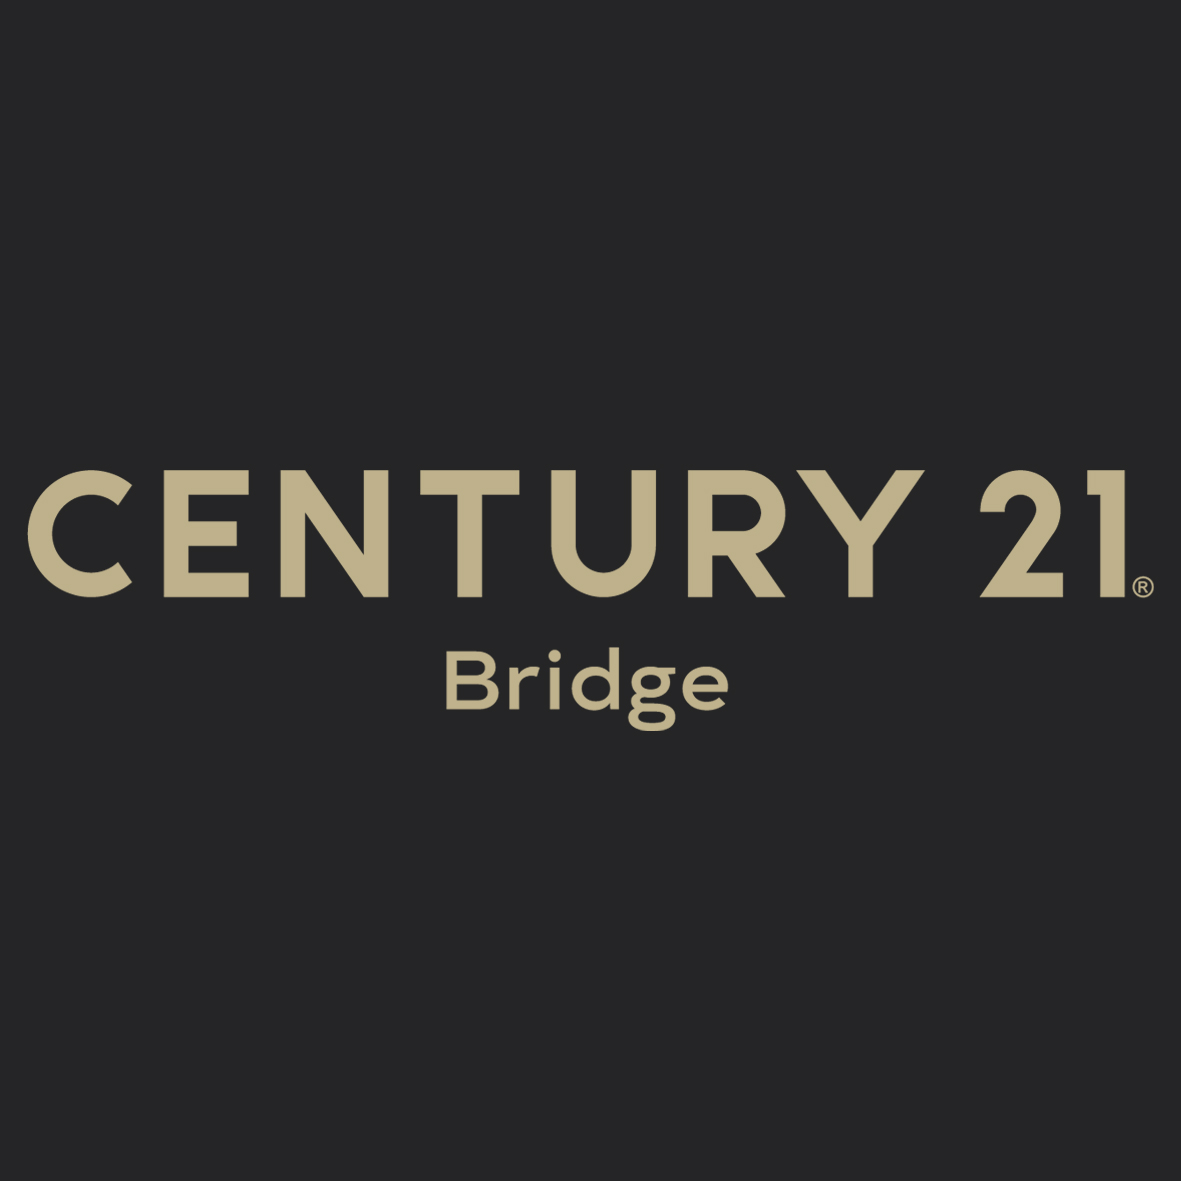 CENTURY 21 Bridge